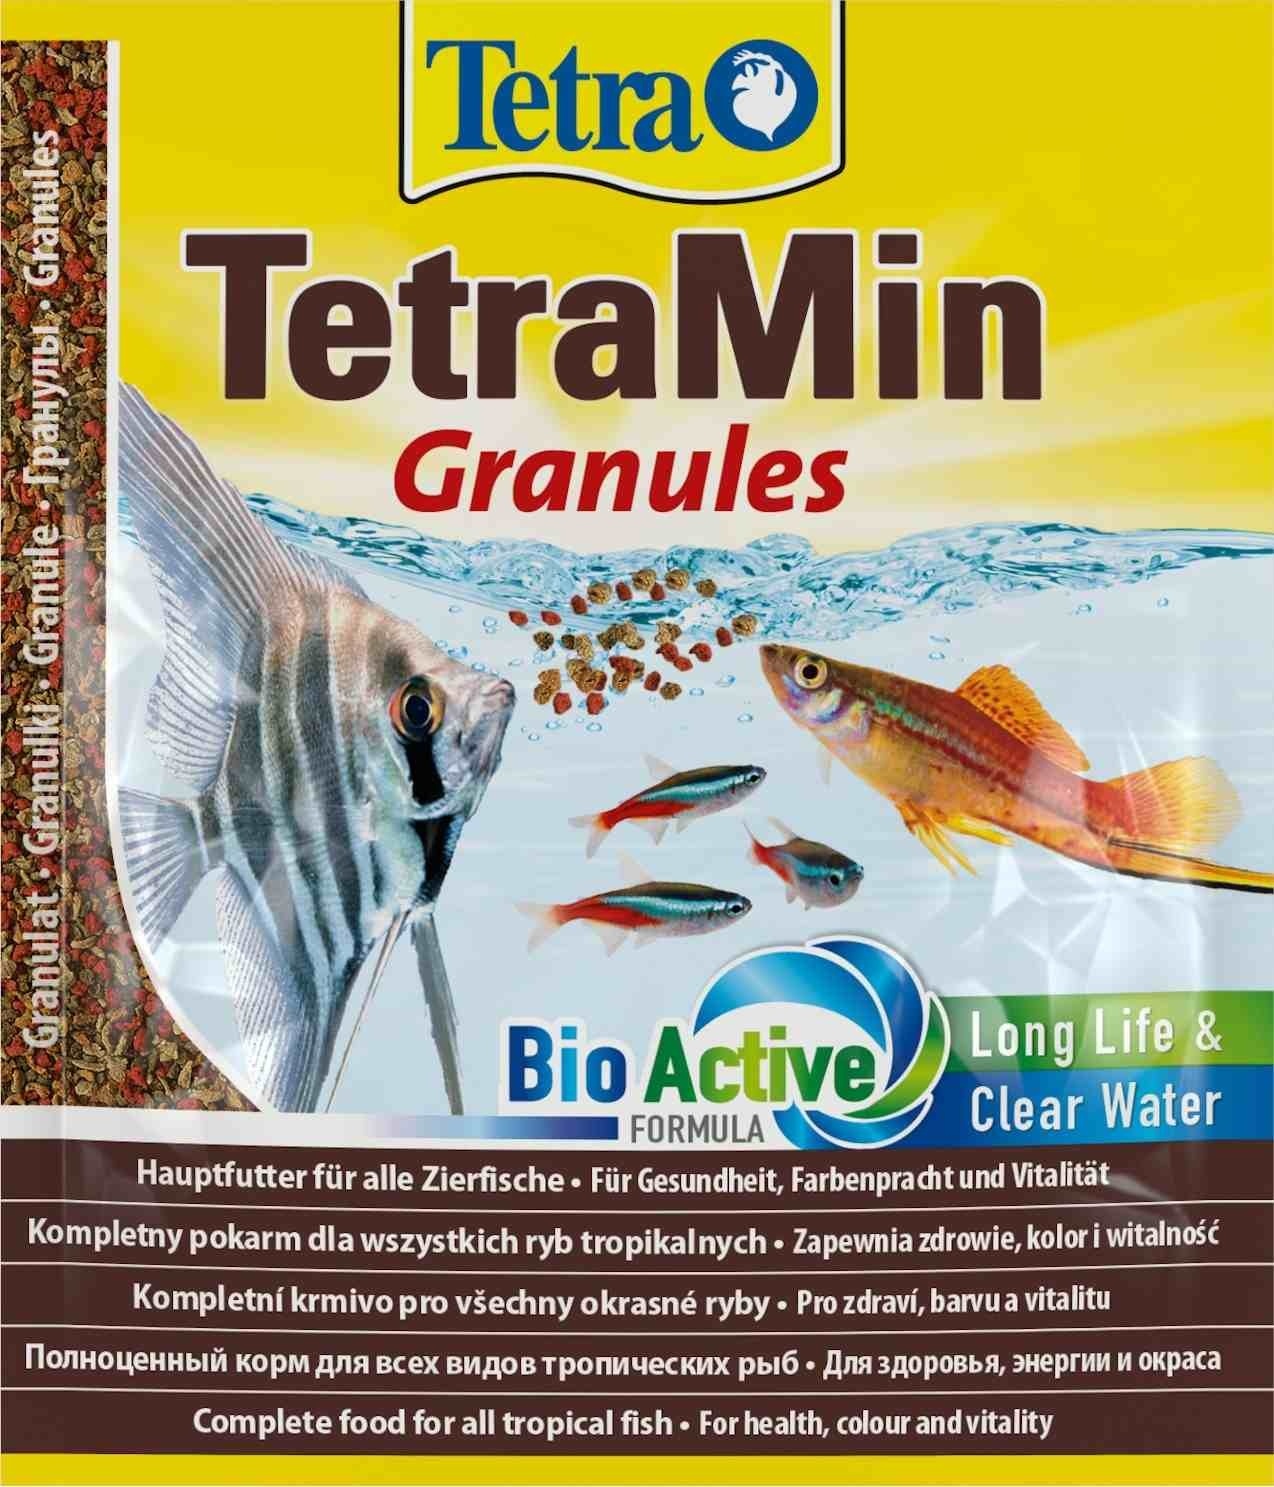 Tetra (корма) Tetra (корма) корм для всех видов тропических рыб. гранулы TetraMin Granules (15 г) tetra корма tetra корма корм для всех видов тропических рыб гранулы tetramin granules 100 г